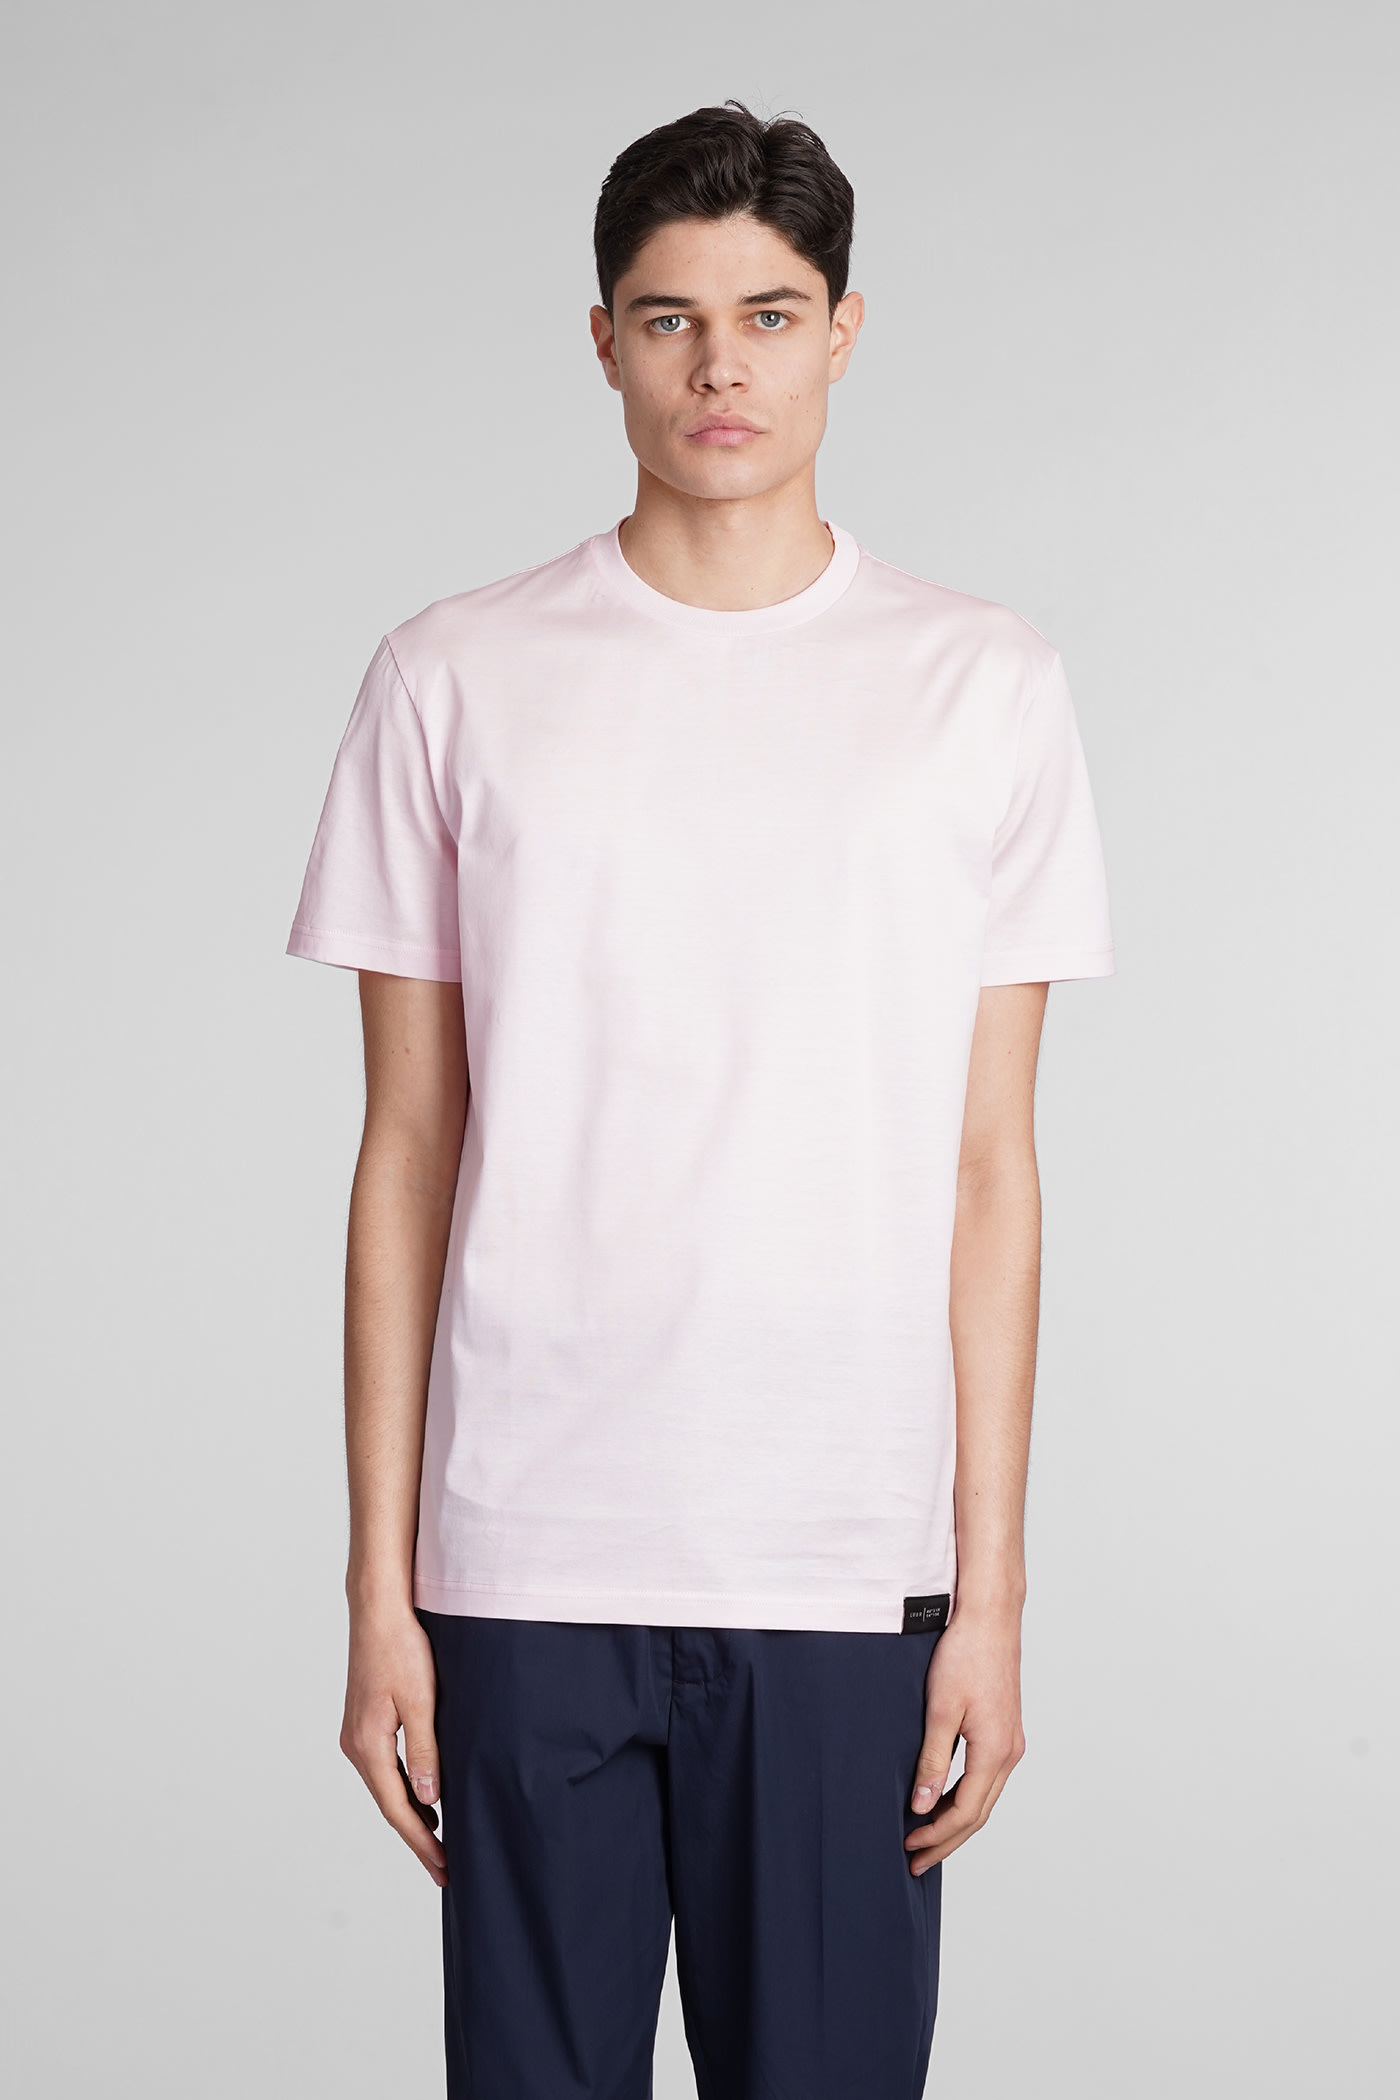 B134 Basic T-shirt In Rose-pink Cotton